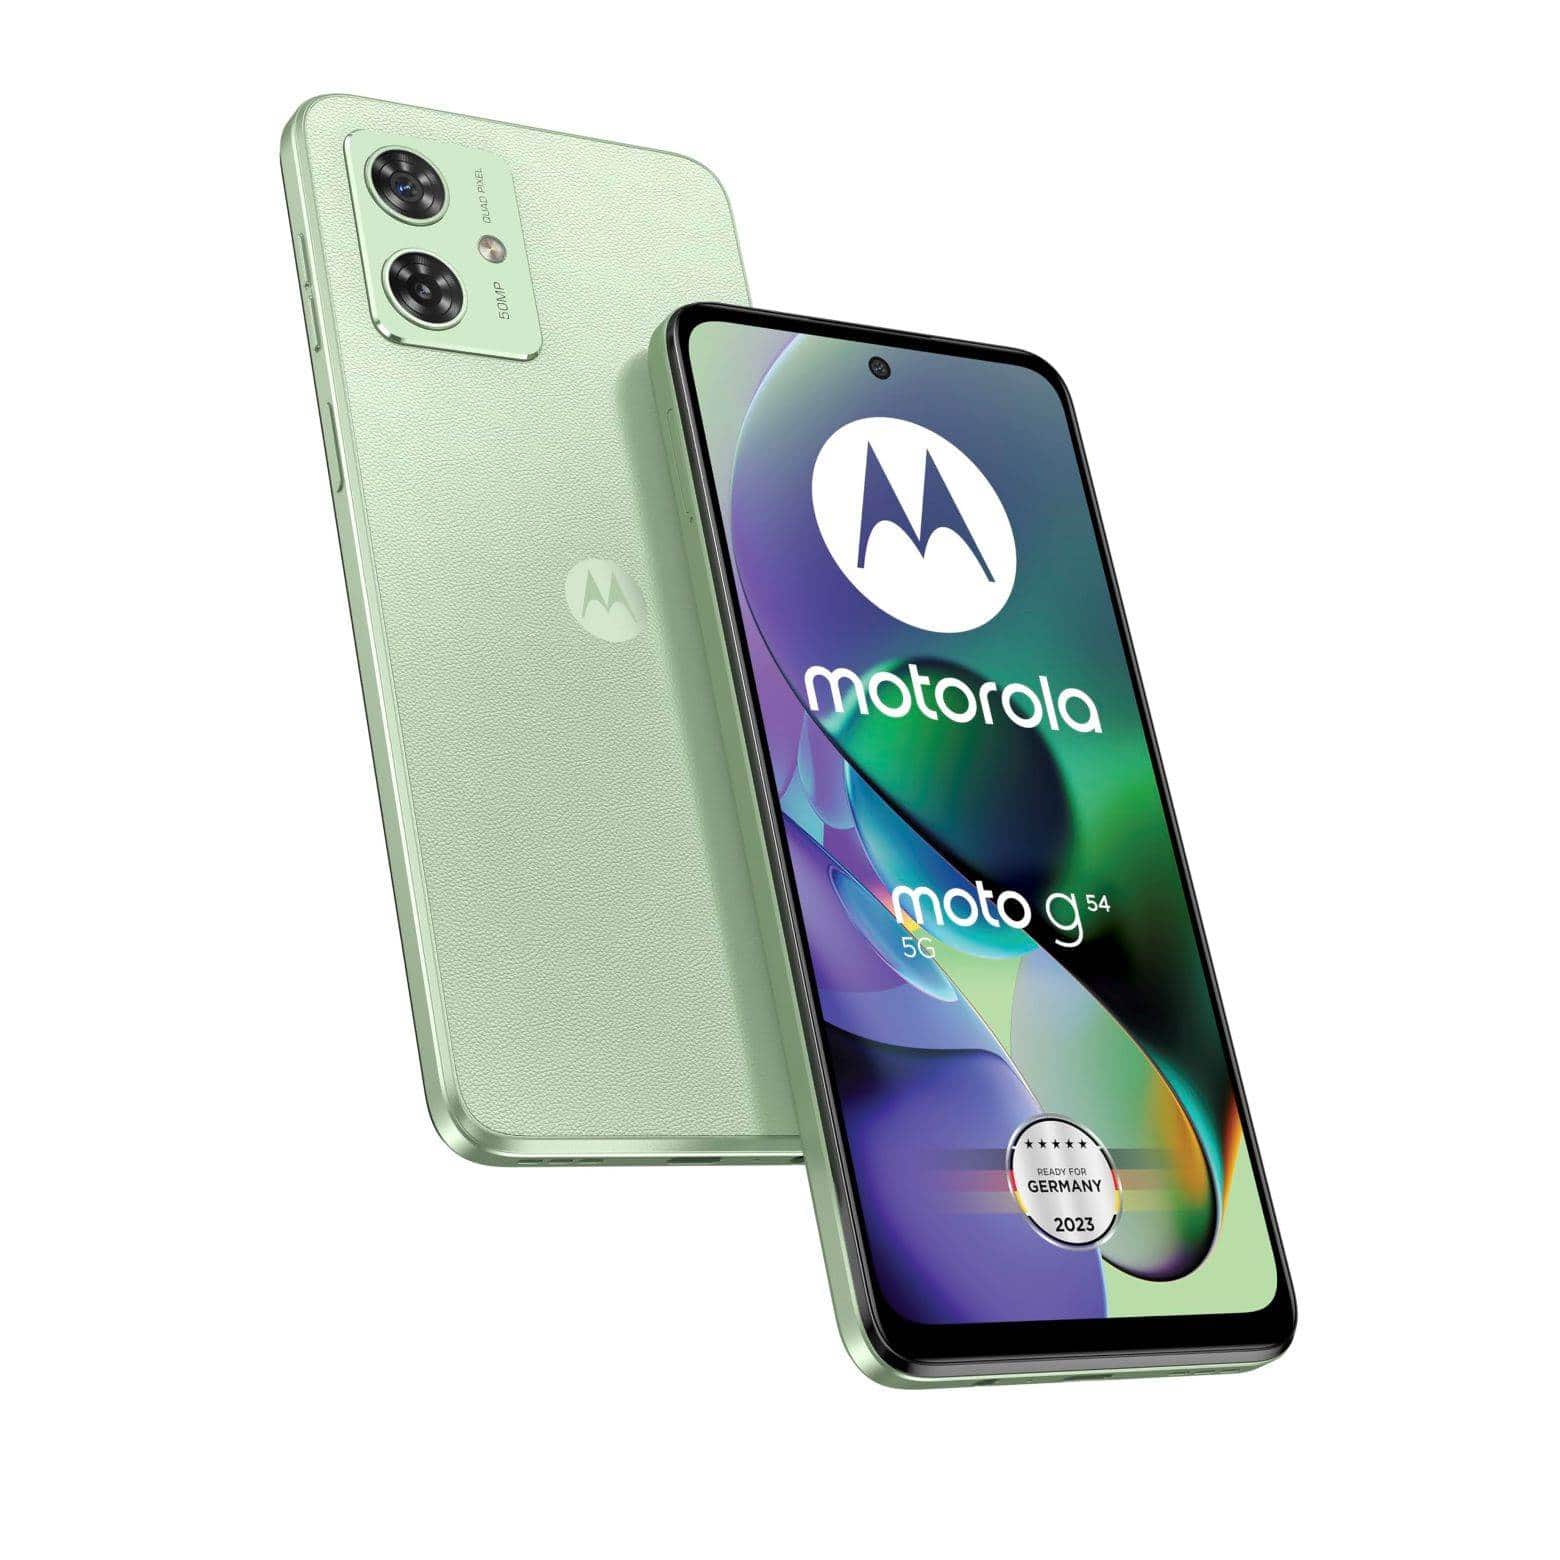 Smartphone Motorola Moto G54 de la gama media; características